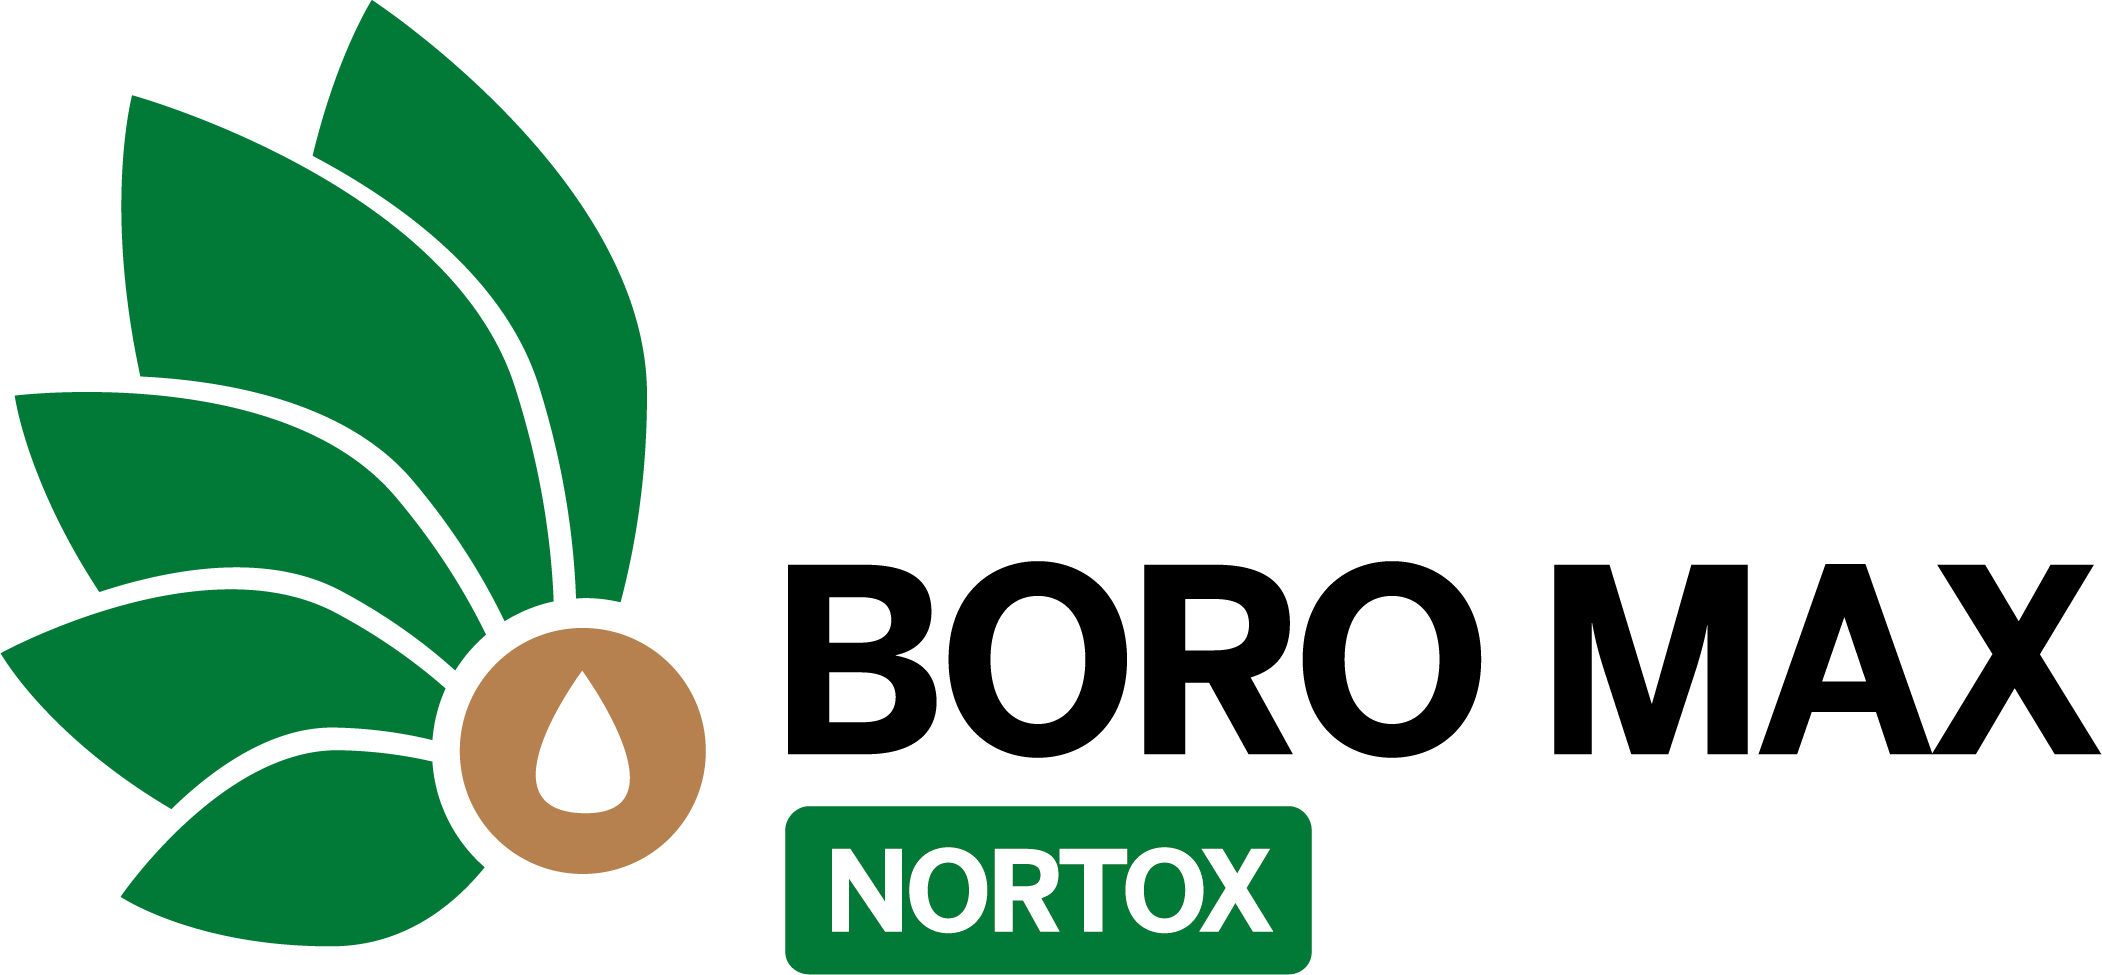 boro_max_logo.jpg